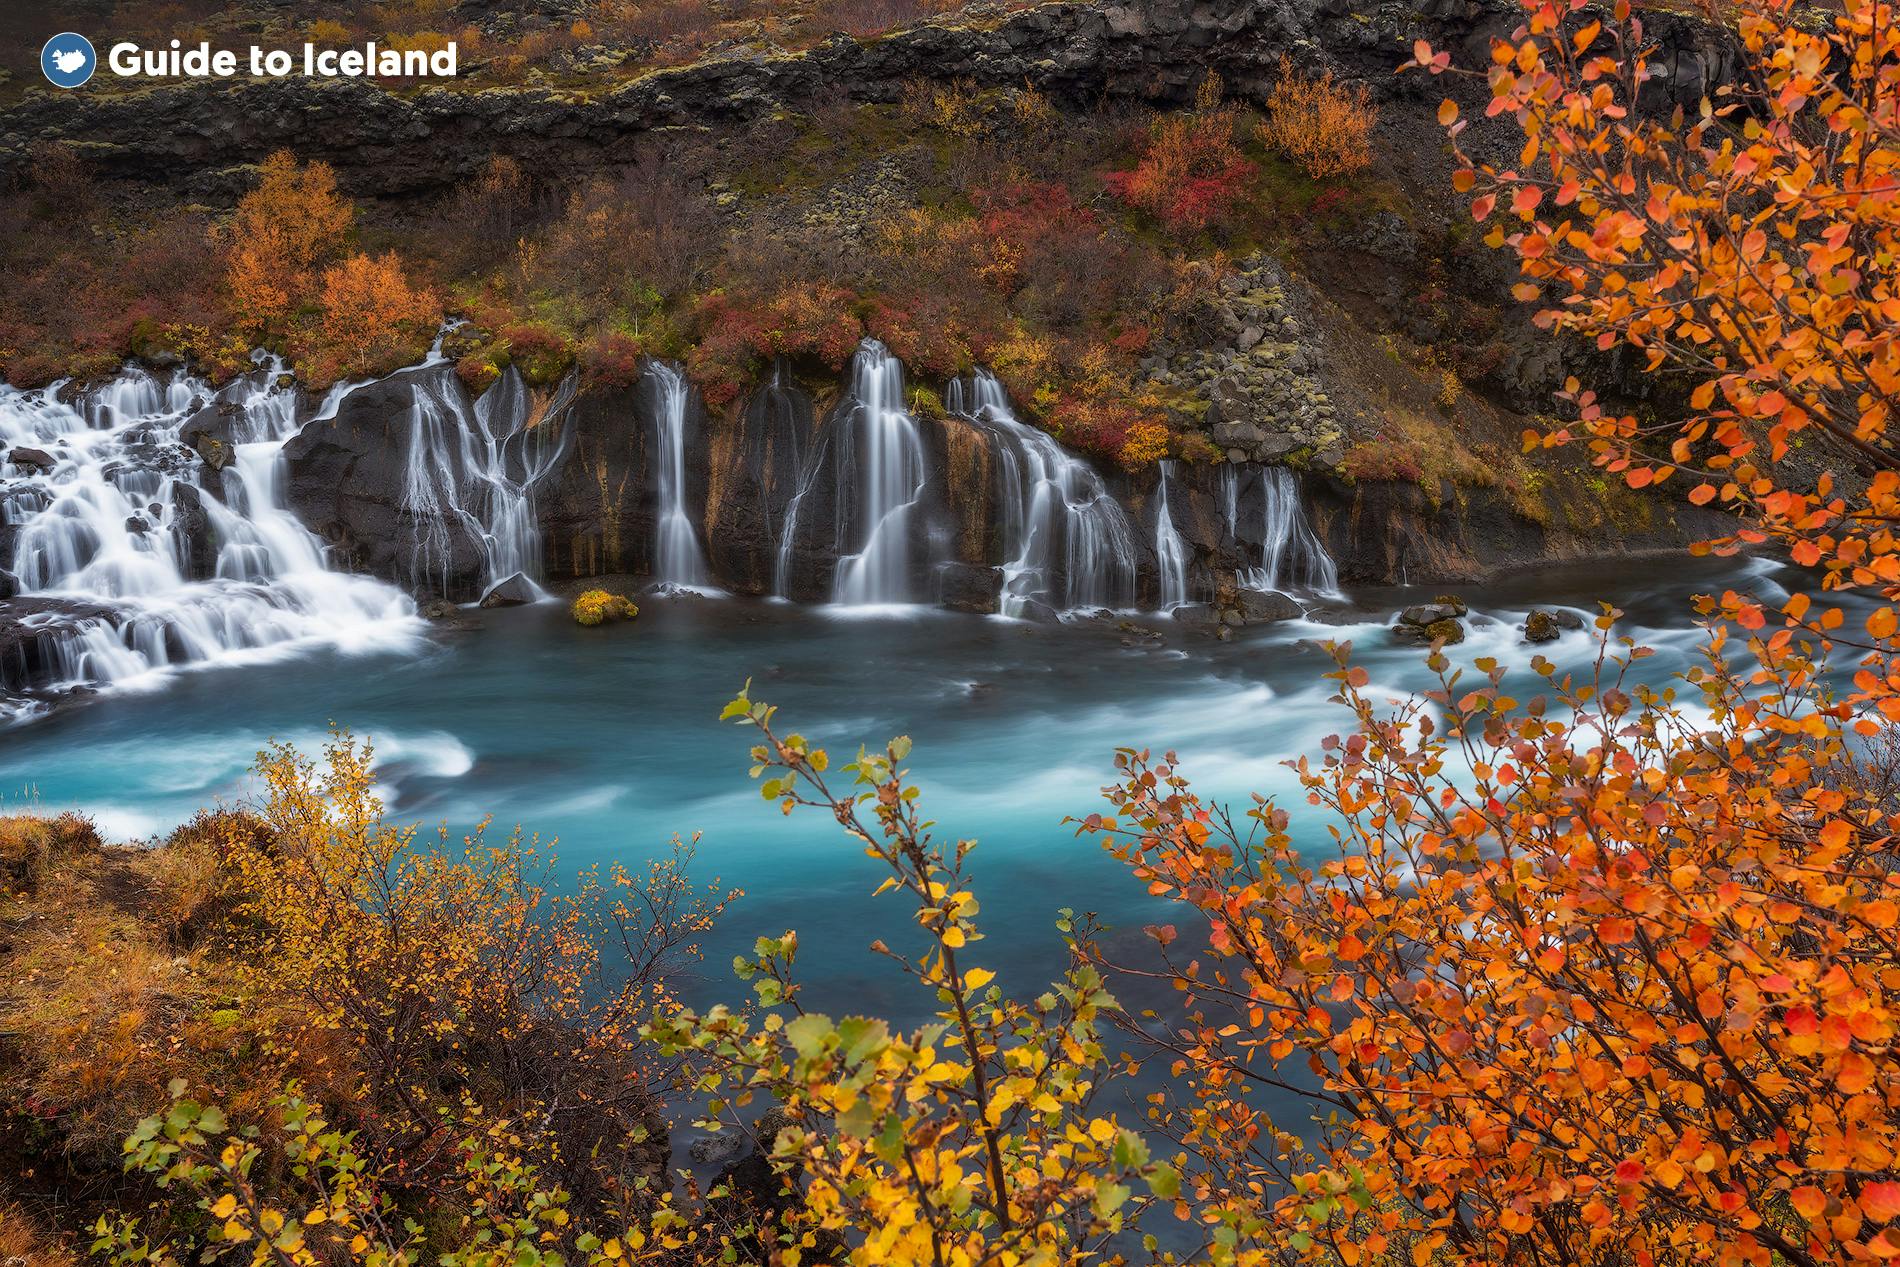 น้ำตกเฮรินฟอซซ่าในทางตอนใต้ของประเทศไอซ์แลนด์ล้อมรอบด้วยป่าเบิร์ชที่สวยงาม